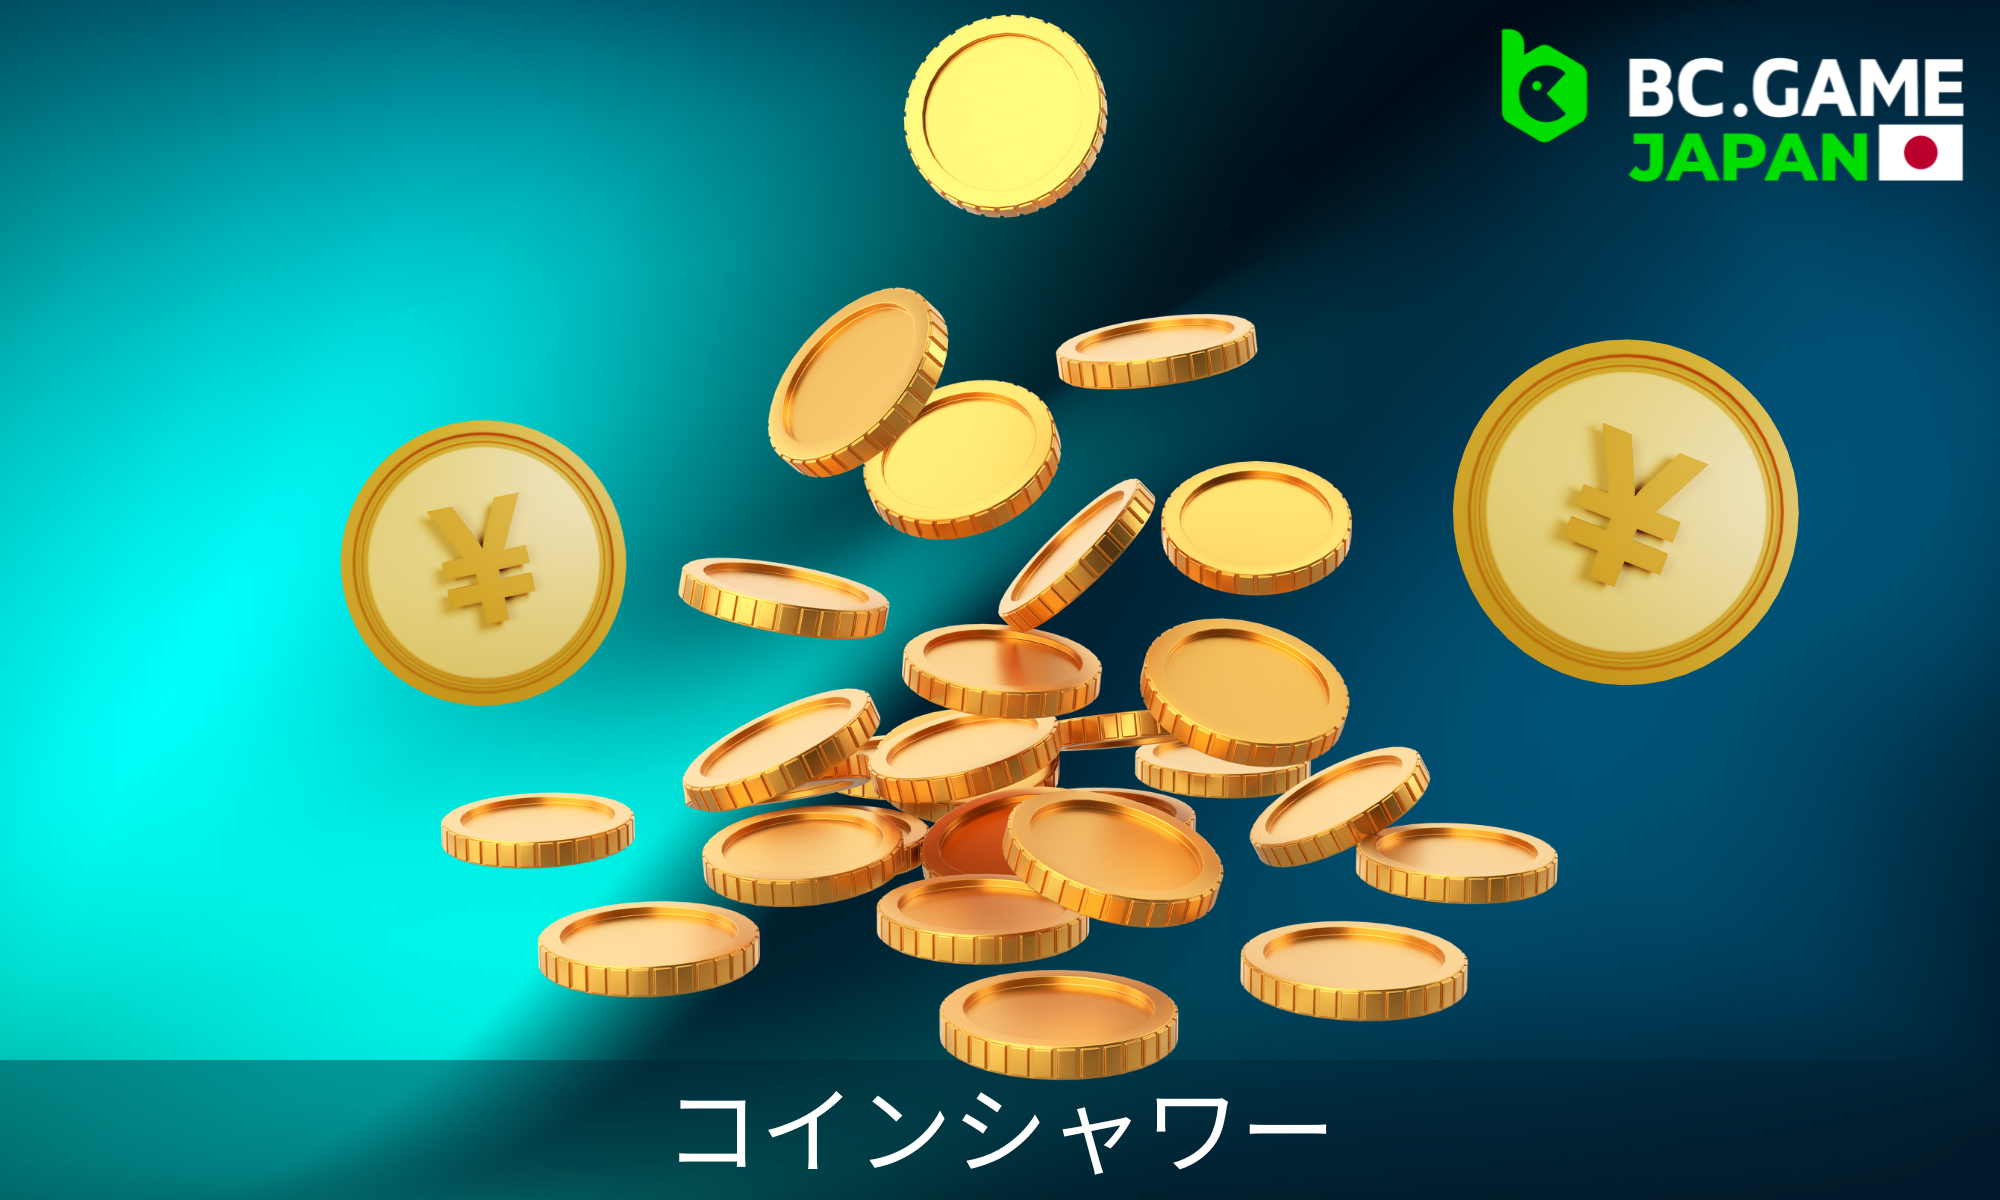 コインはランダムにチャットに表示され、プレイヤーは他のプレイヤーより先にコインを獲得しなければならない。